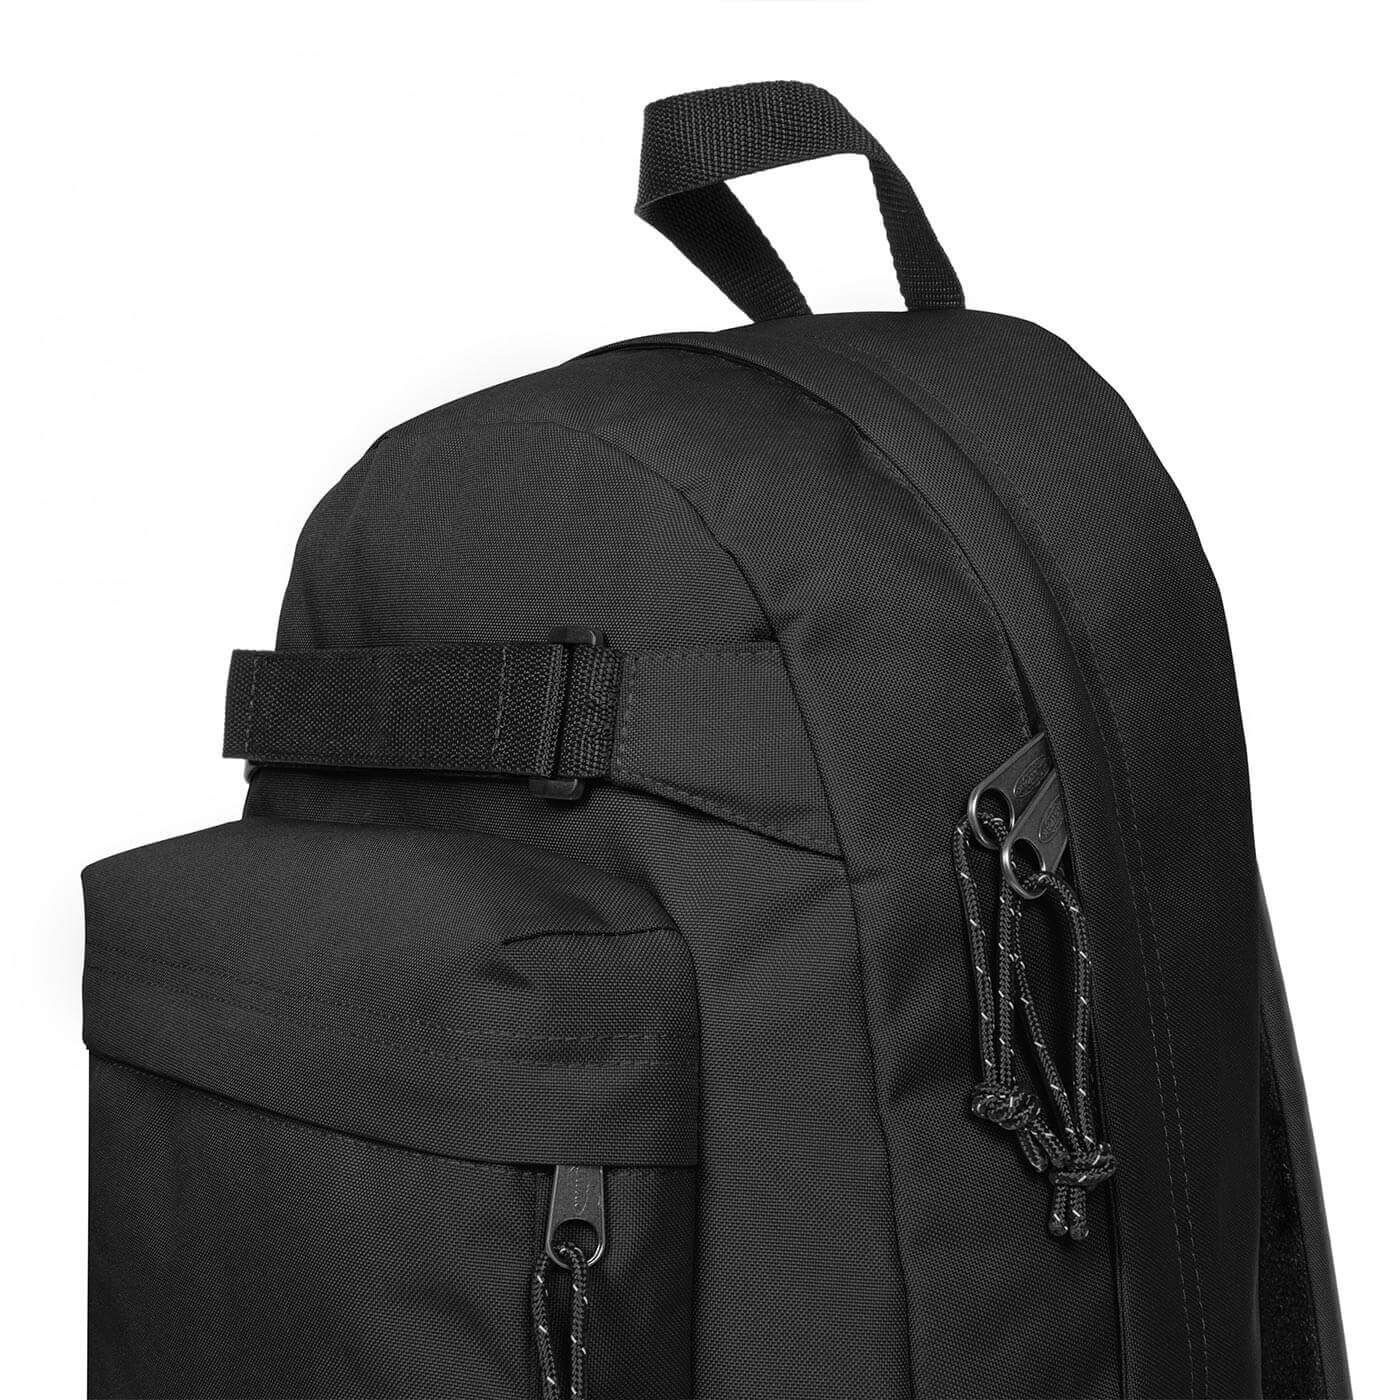 Eastpak - Skate Pak'r Black backpack, Black, large image number 2